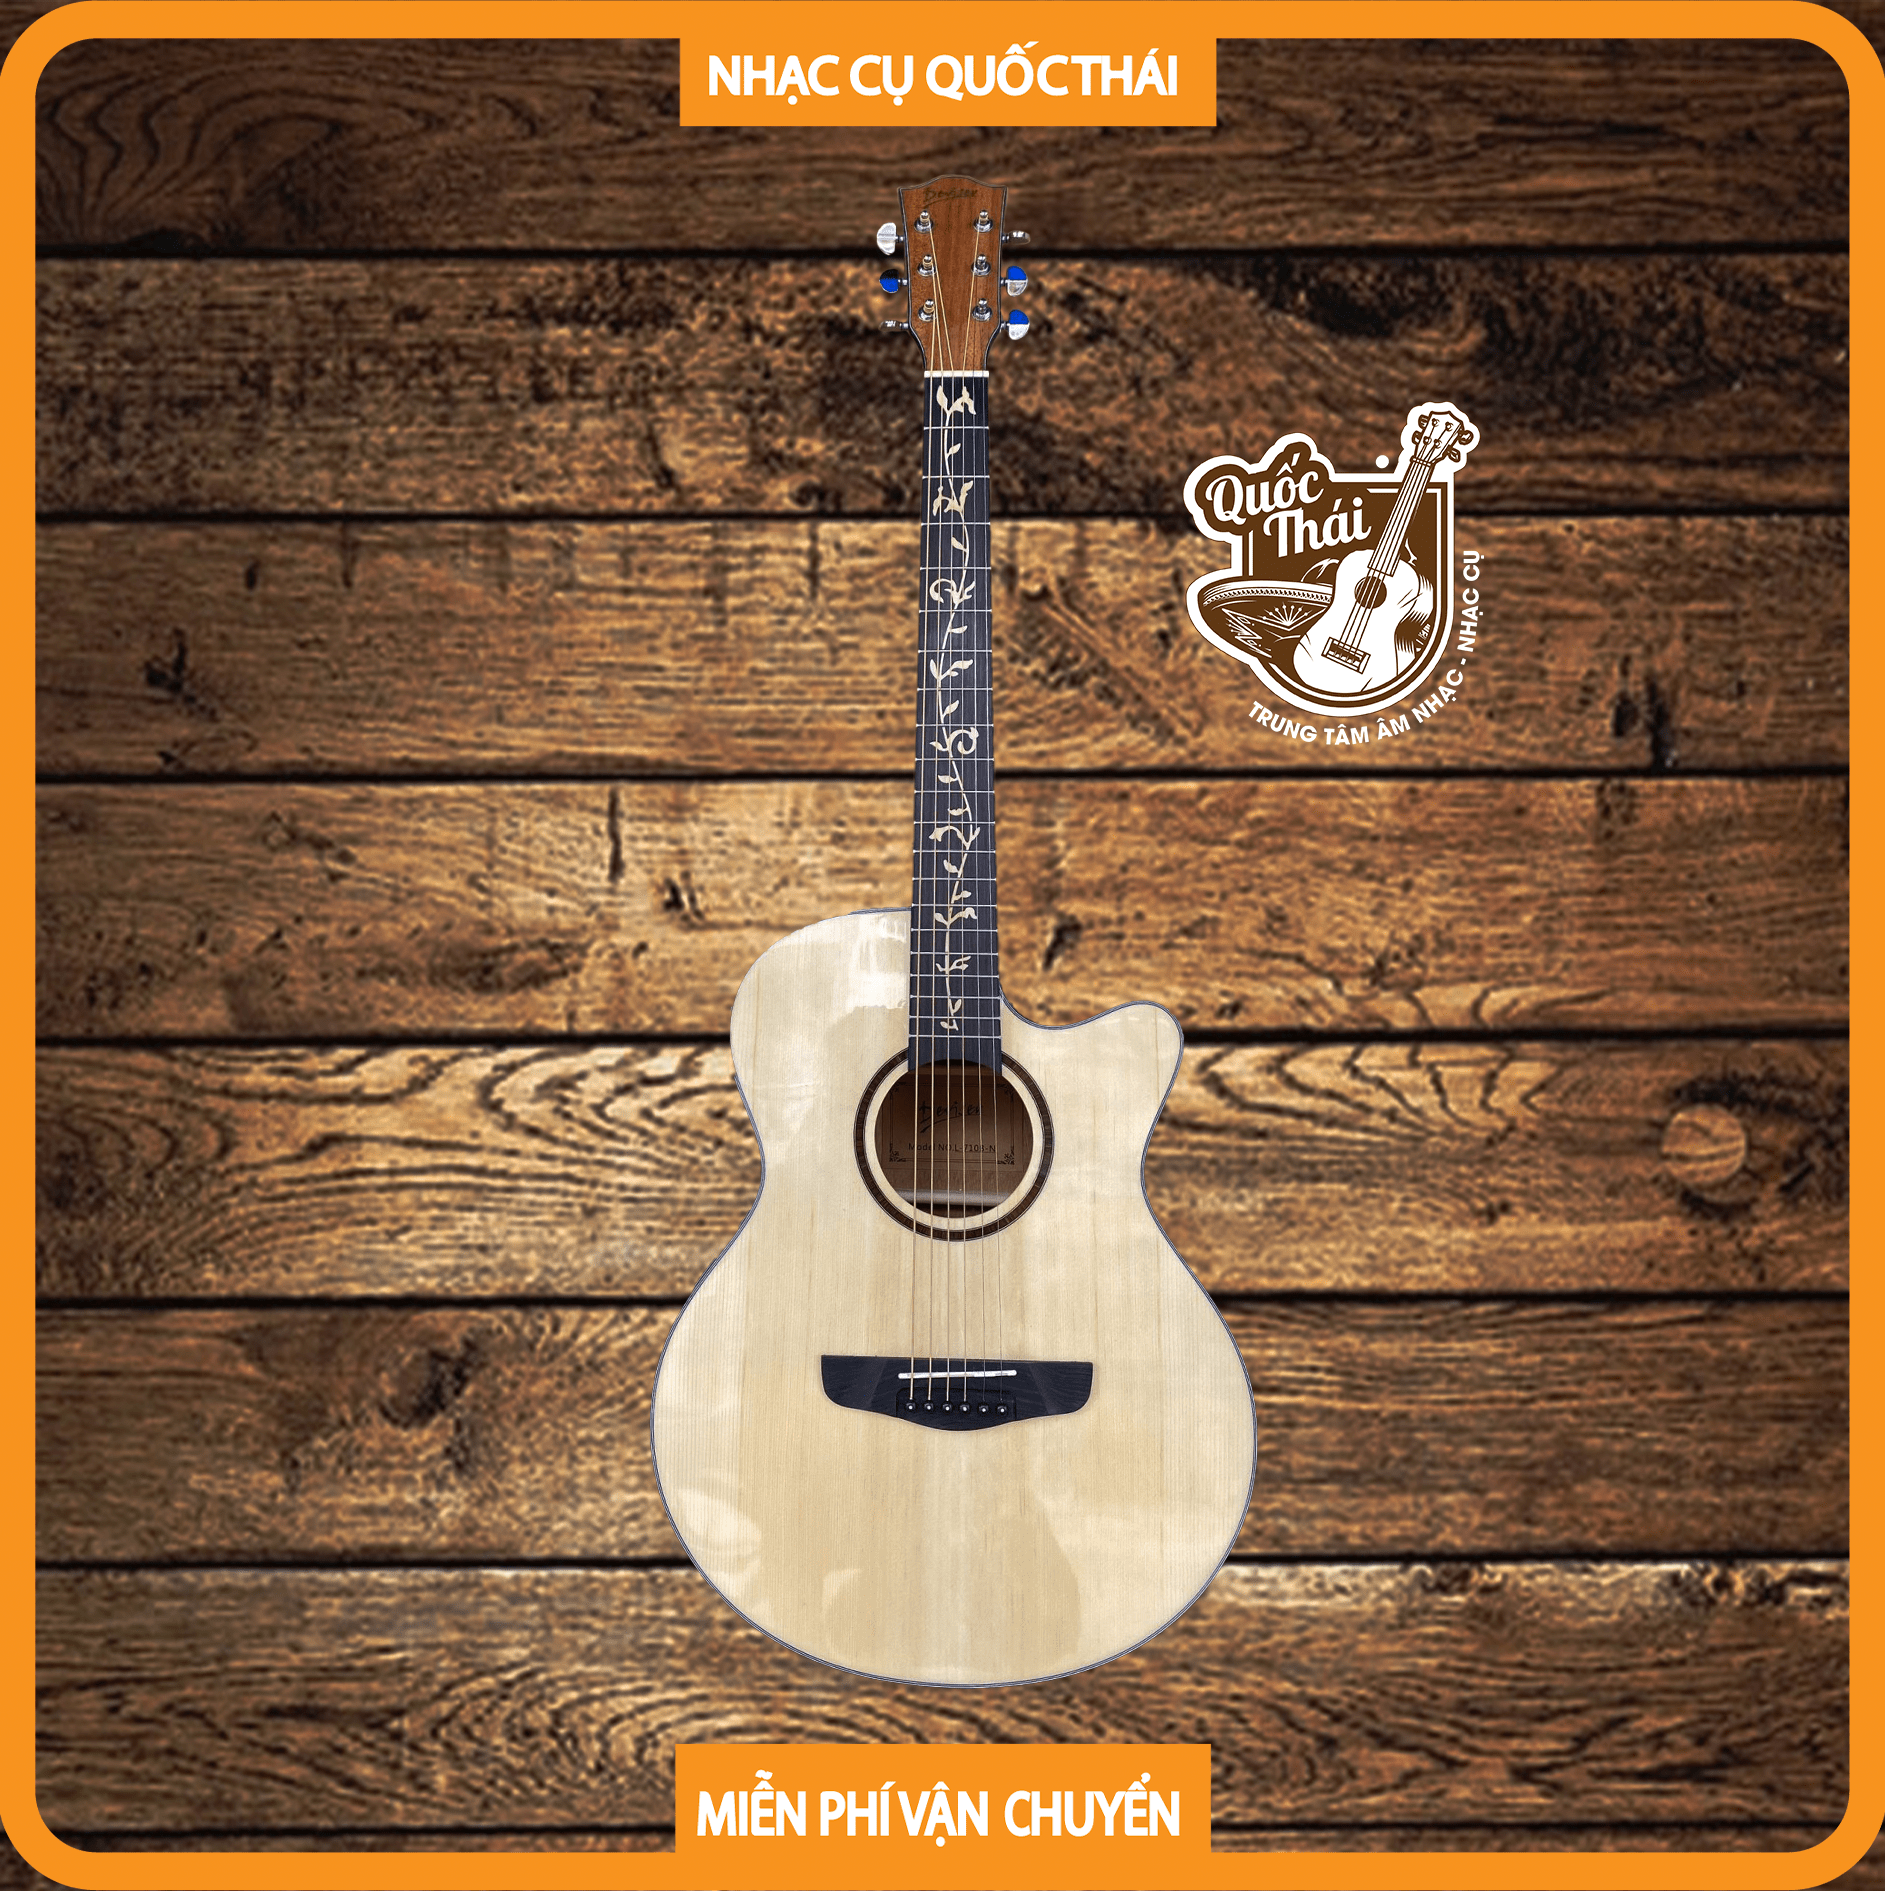 Enya EA-X1 là một cây đàn guitar acoustic tuyệt vời, với chất lượng âm thanh và thiết kế đồng bộ hoàn hảo. Hãy xem hình ảnh về cây guitar này để cảm nhận sự tinh tế và đẳng cấp của sản phẩm.